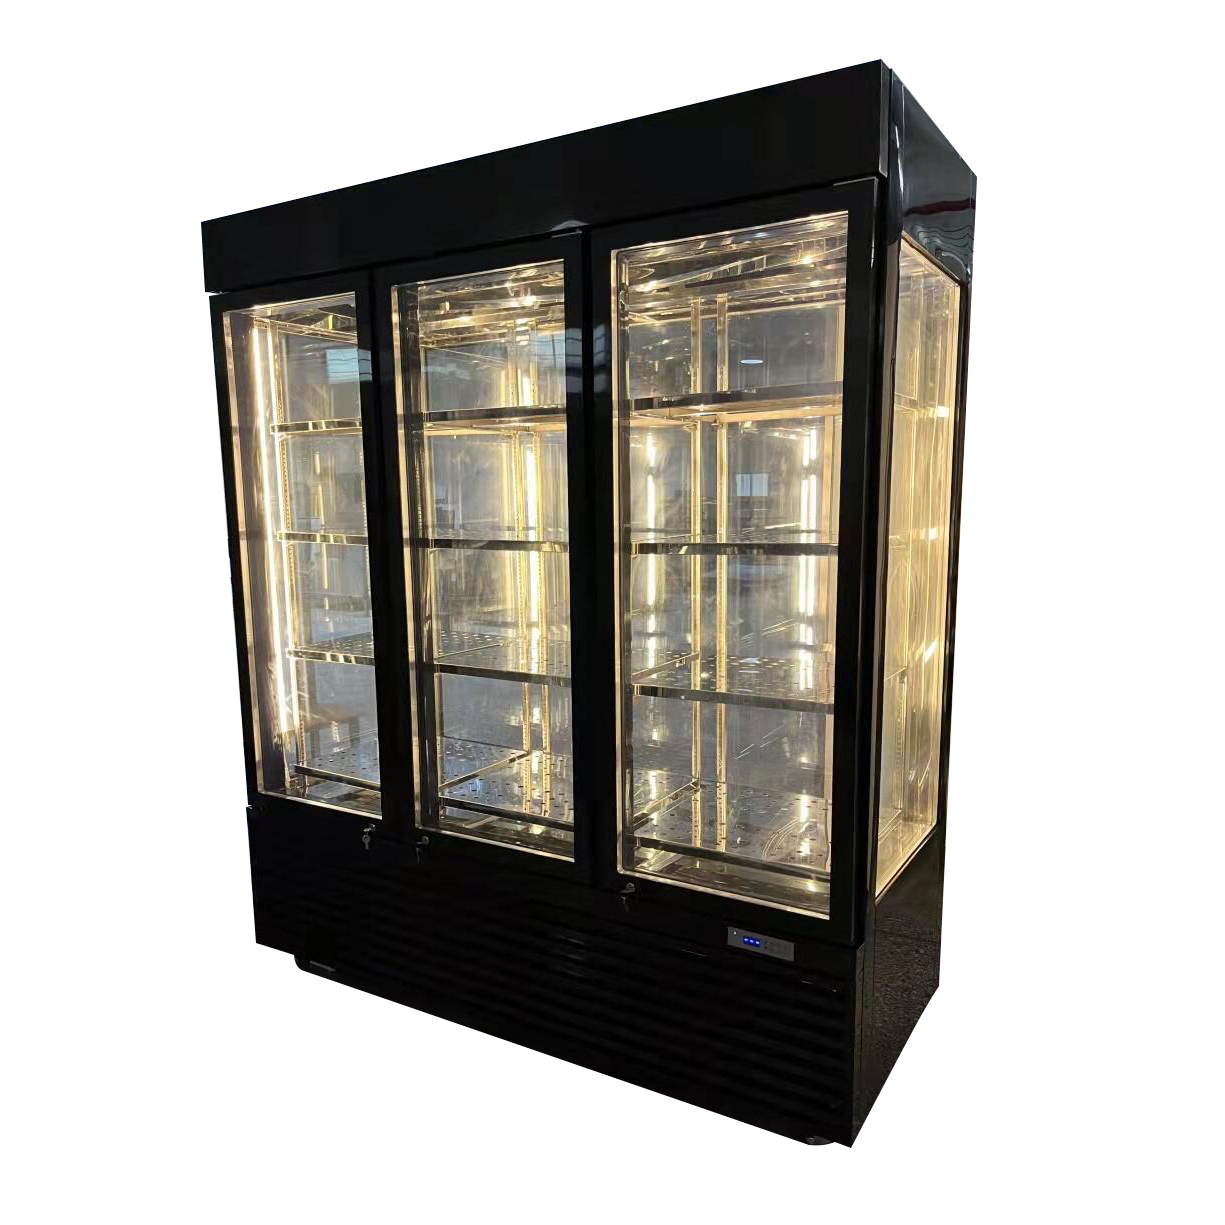 Refrigerador envejecido en seco comercial Refrigerador Congelador Refrigerador para carne